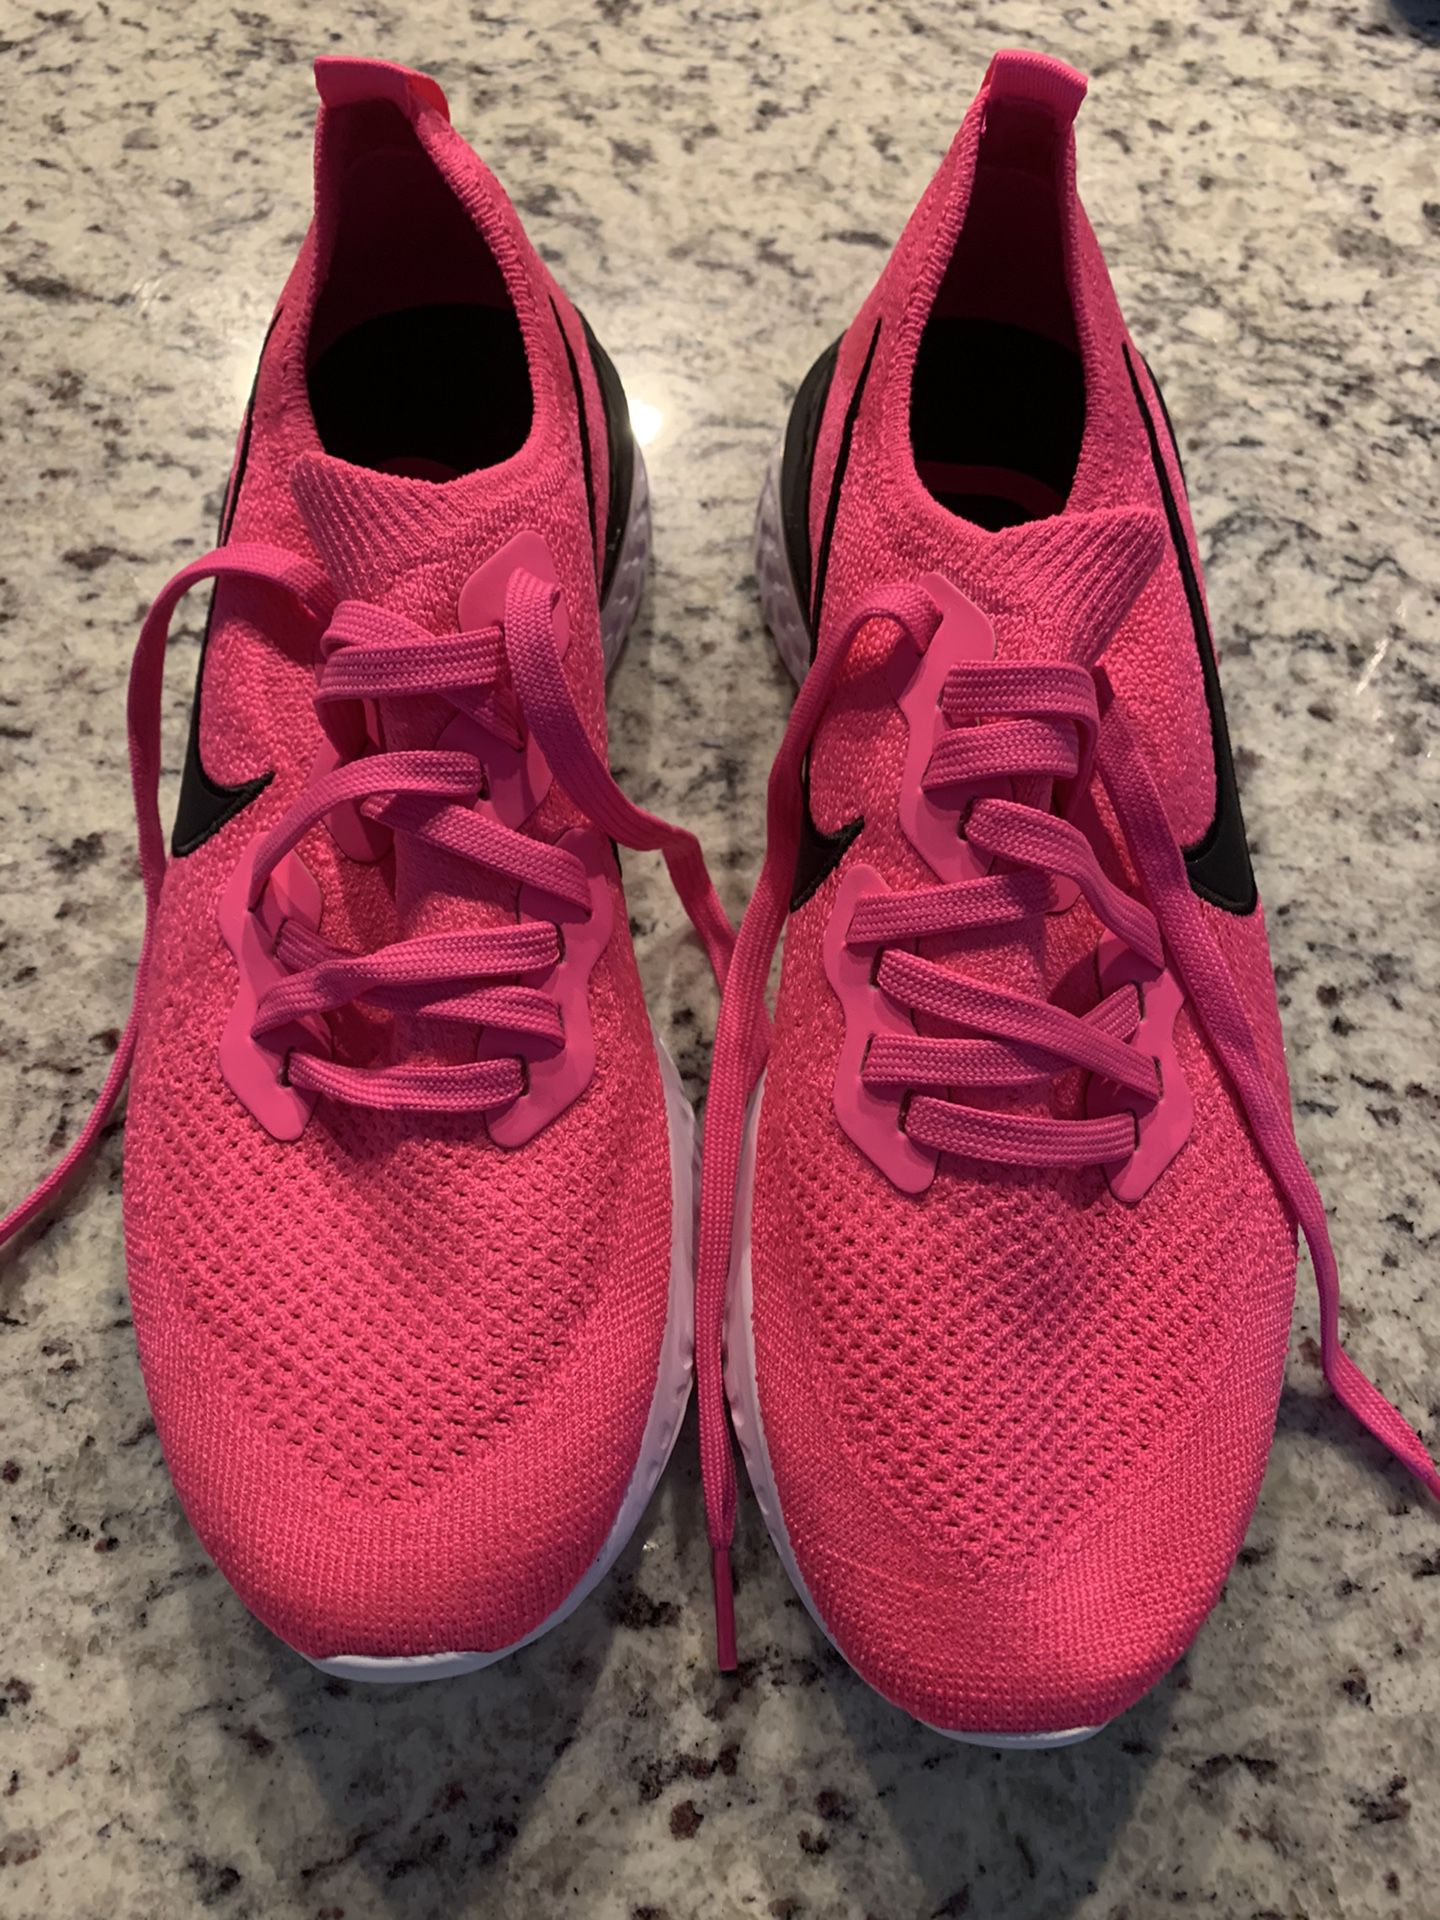 Nike hot pink size 10 women’s running shoe